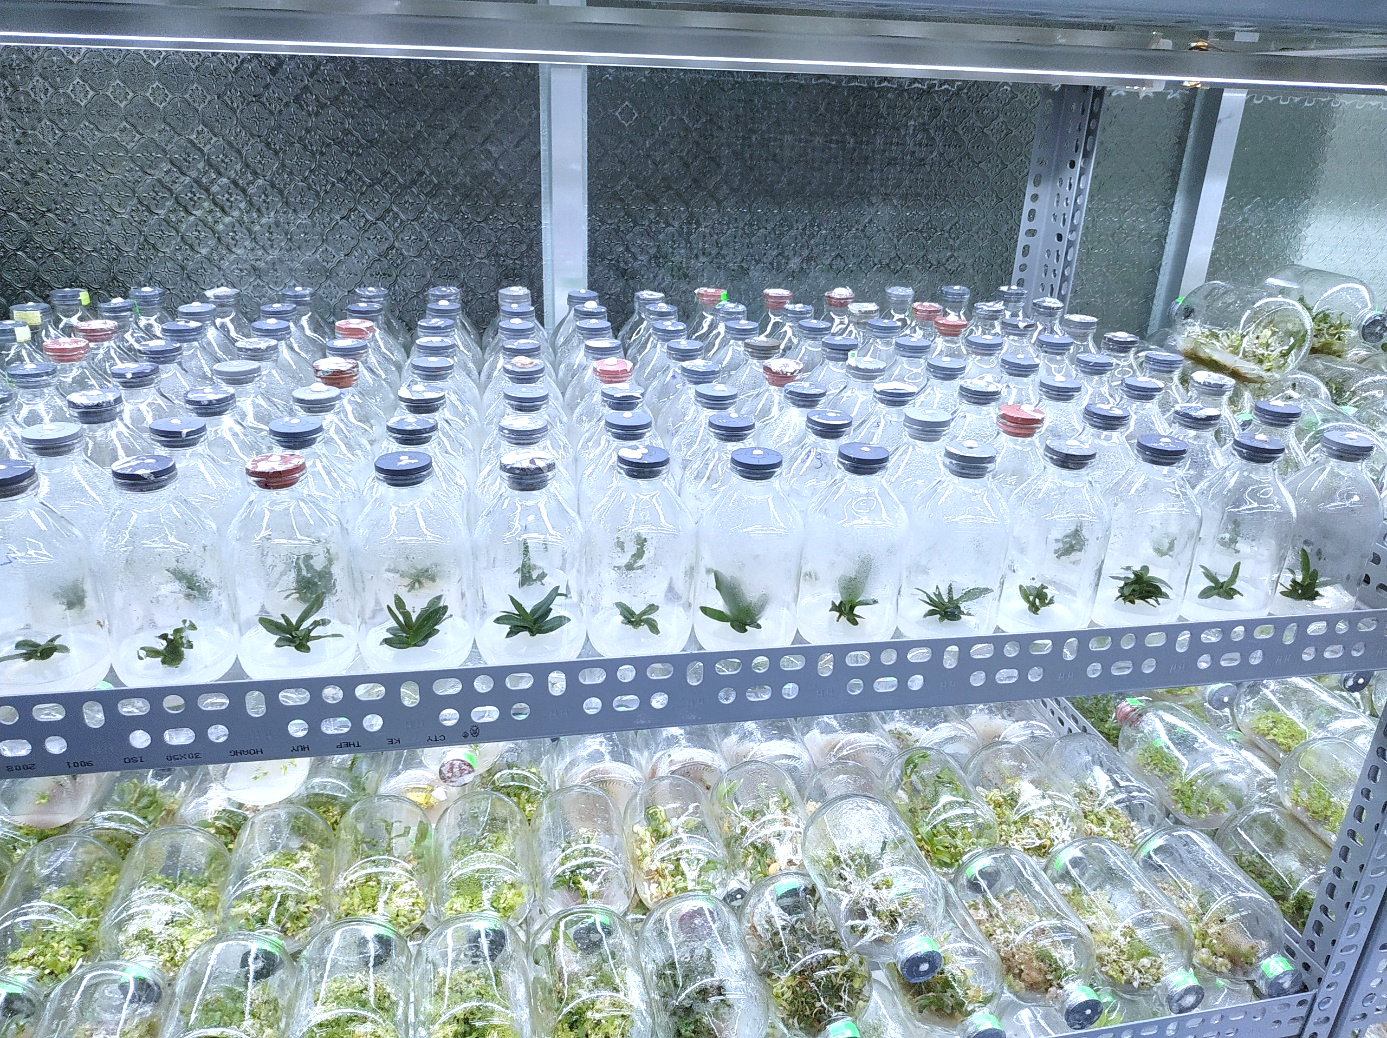 Ứng dụng công nghệ sinh học để nhân giống cây lan Hoàng nhạn 
(Aerides houlletiana) bằng phương pháp nuôi cấy mô tế bào thực vật từ giai đoạn tạo nguồn mẫu ban đầu đến nhân chồi.
